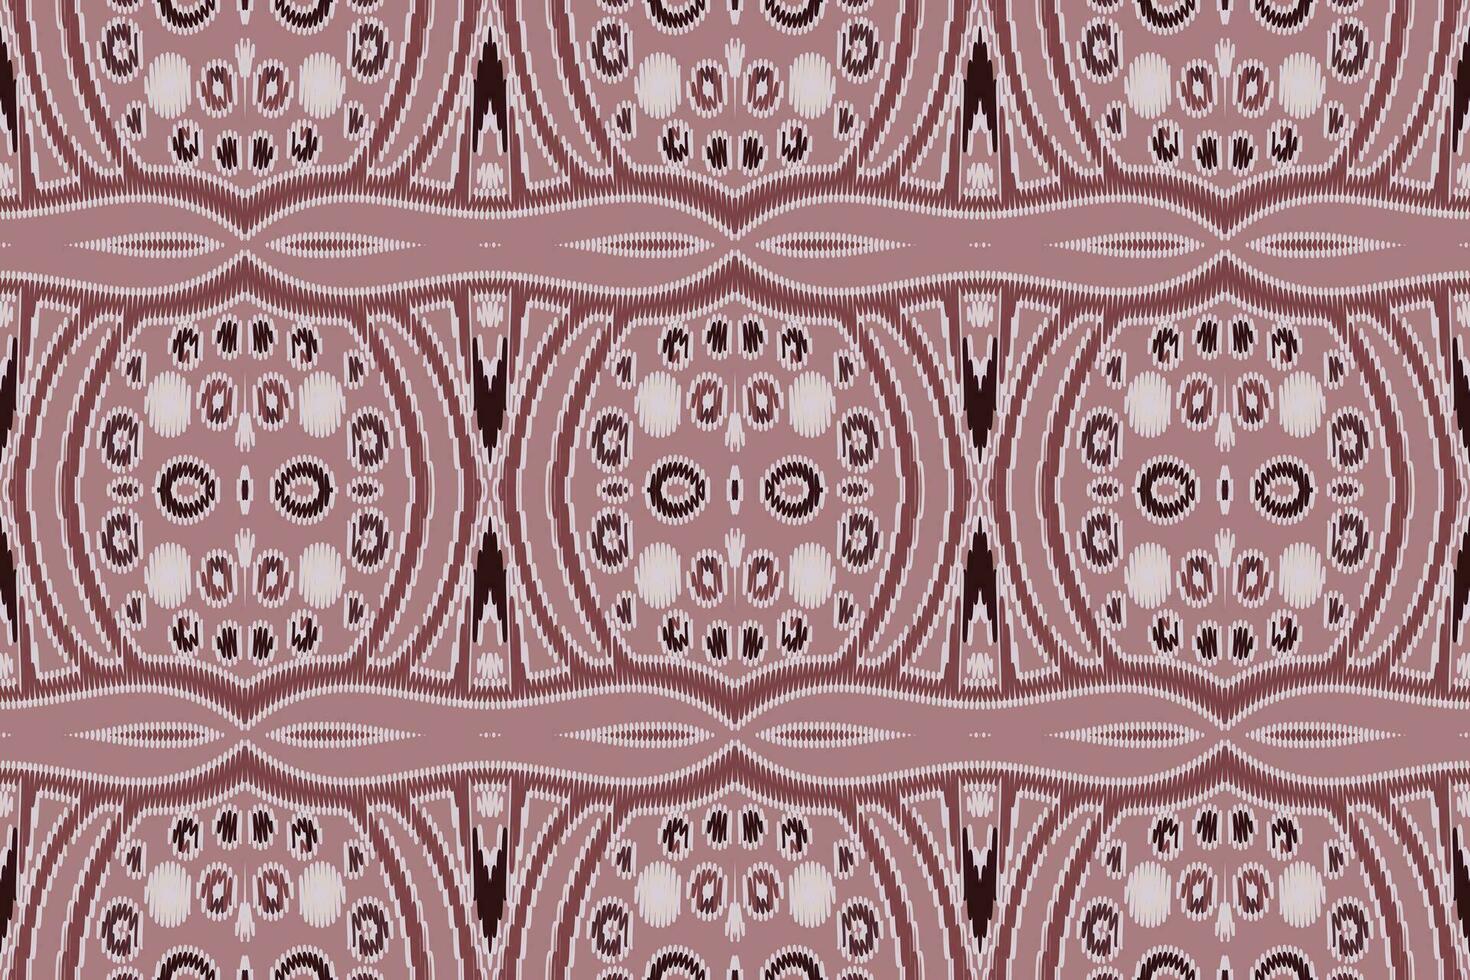 soie en tissu patola sari modèle sans couture australien Aborigène modèle motif broderie, ikat broderie vecteur conception pour impression jacquard slave modèle folklore modèle kente arabesque